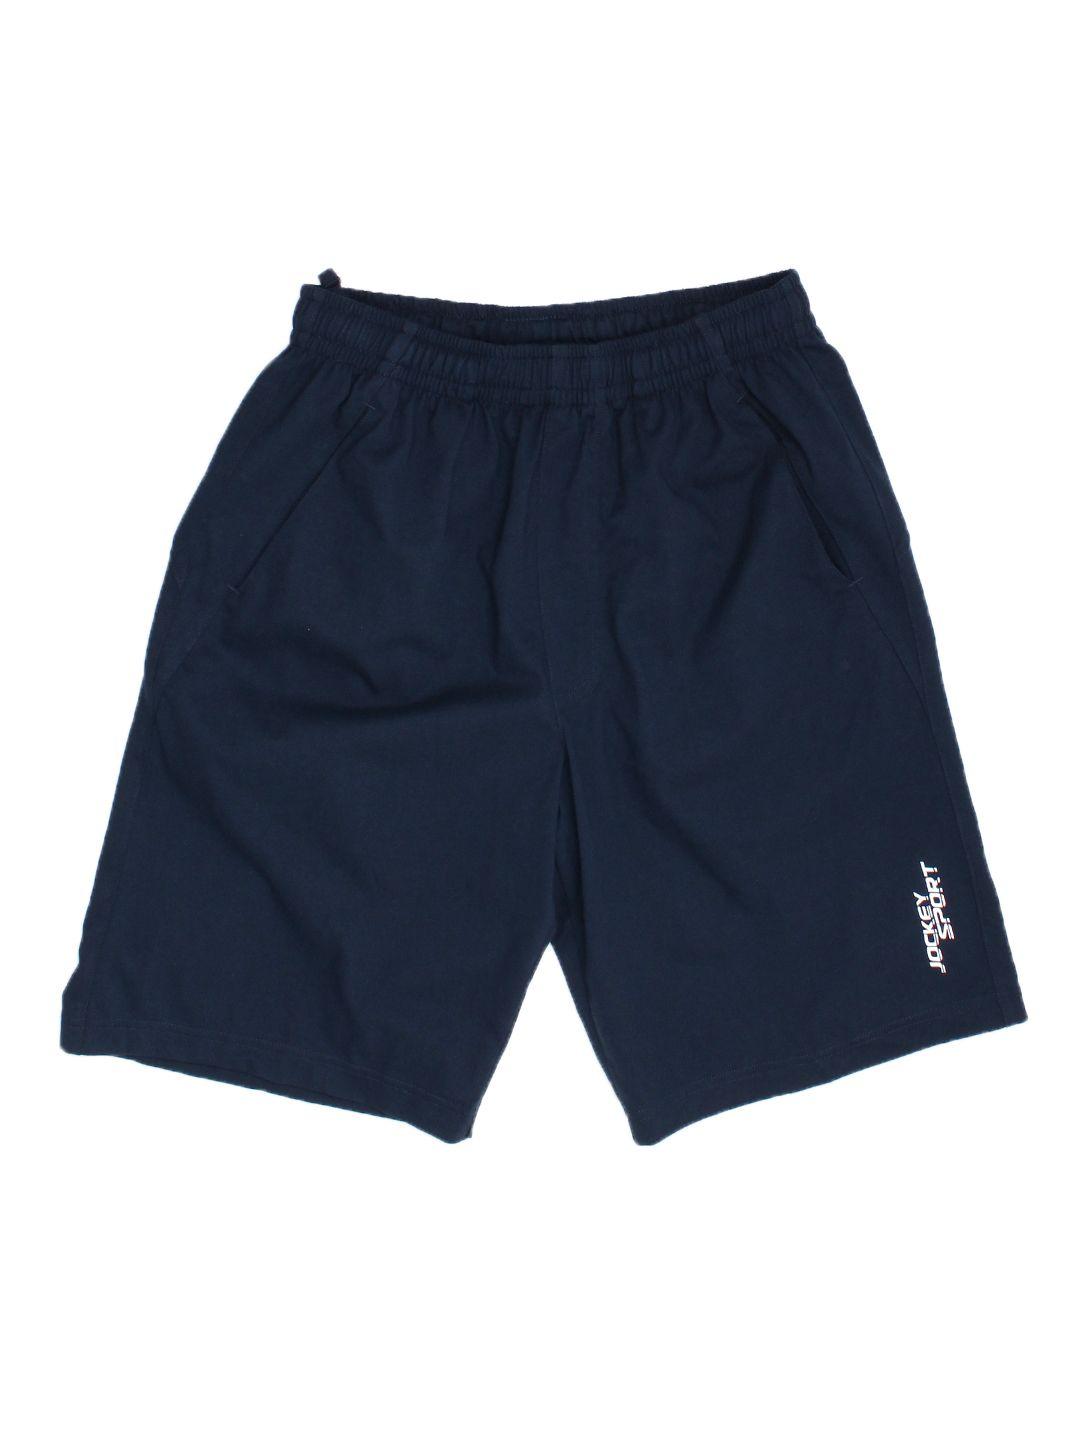 jockey-men-navy-blue-solid-sport-shorts